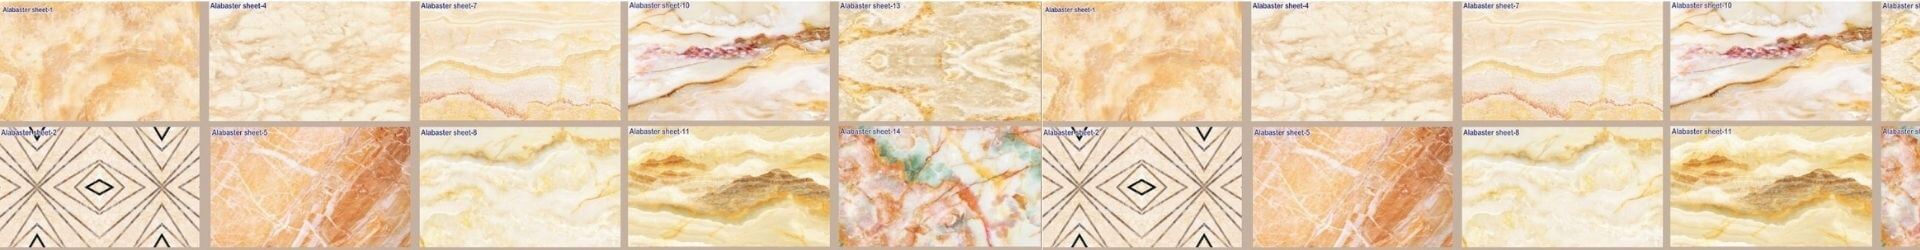 alabaster sheet, alabaster sheet texture, alabaster sheet price, alabaster sheet thickness, alabaster sheet design